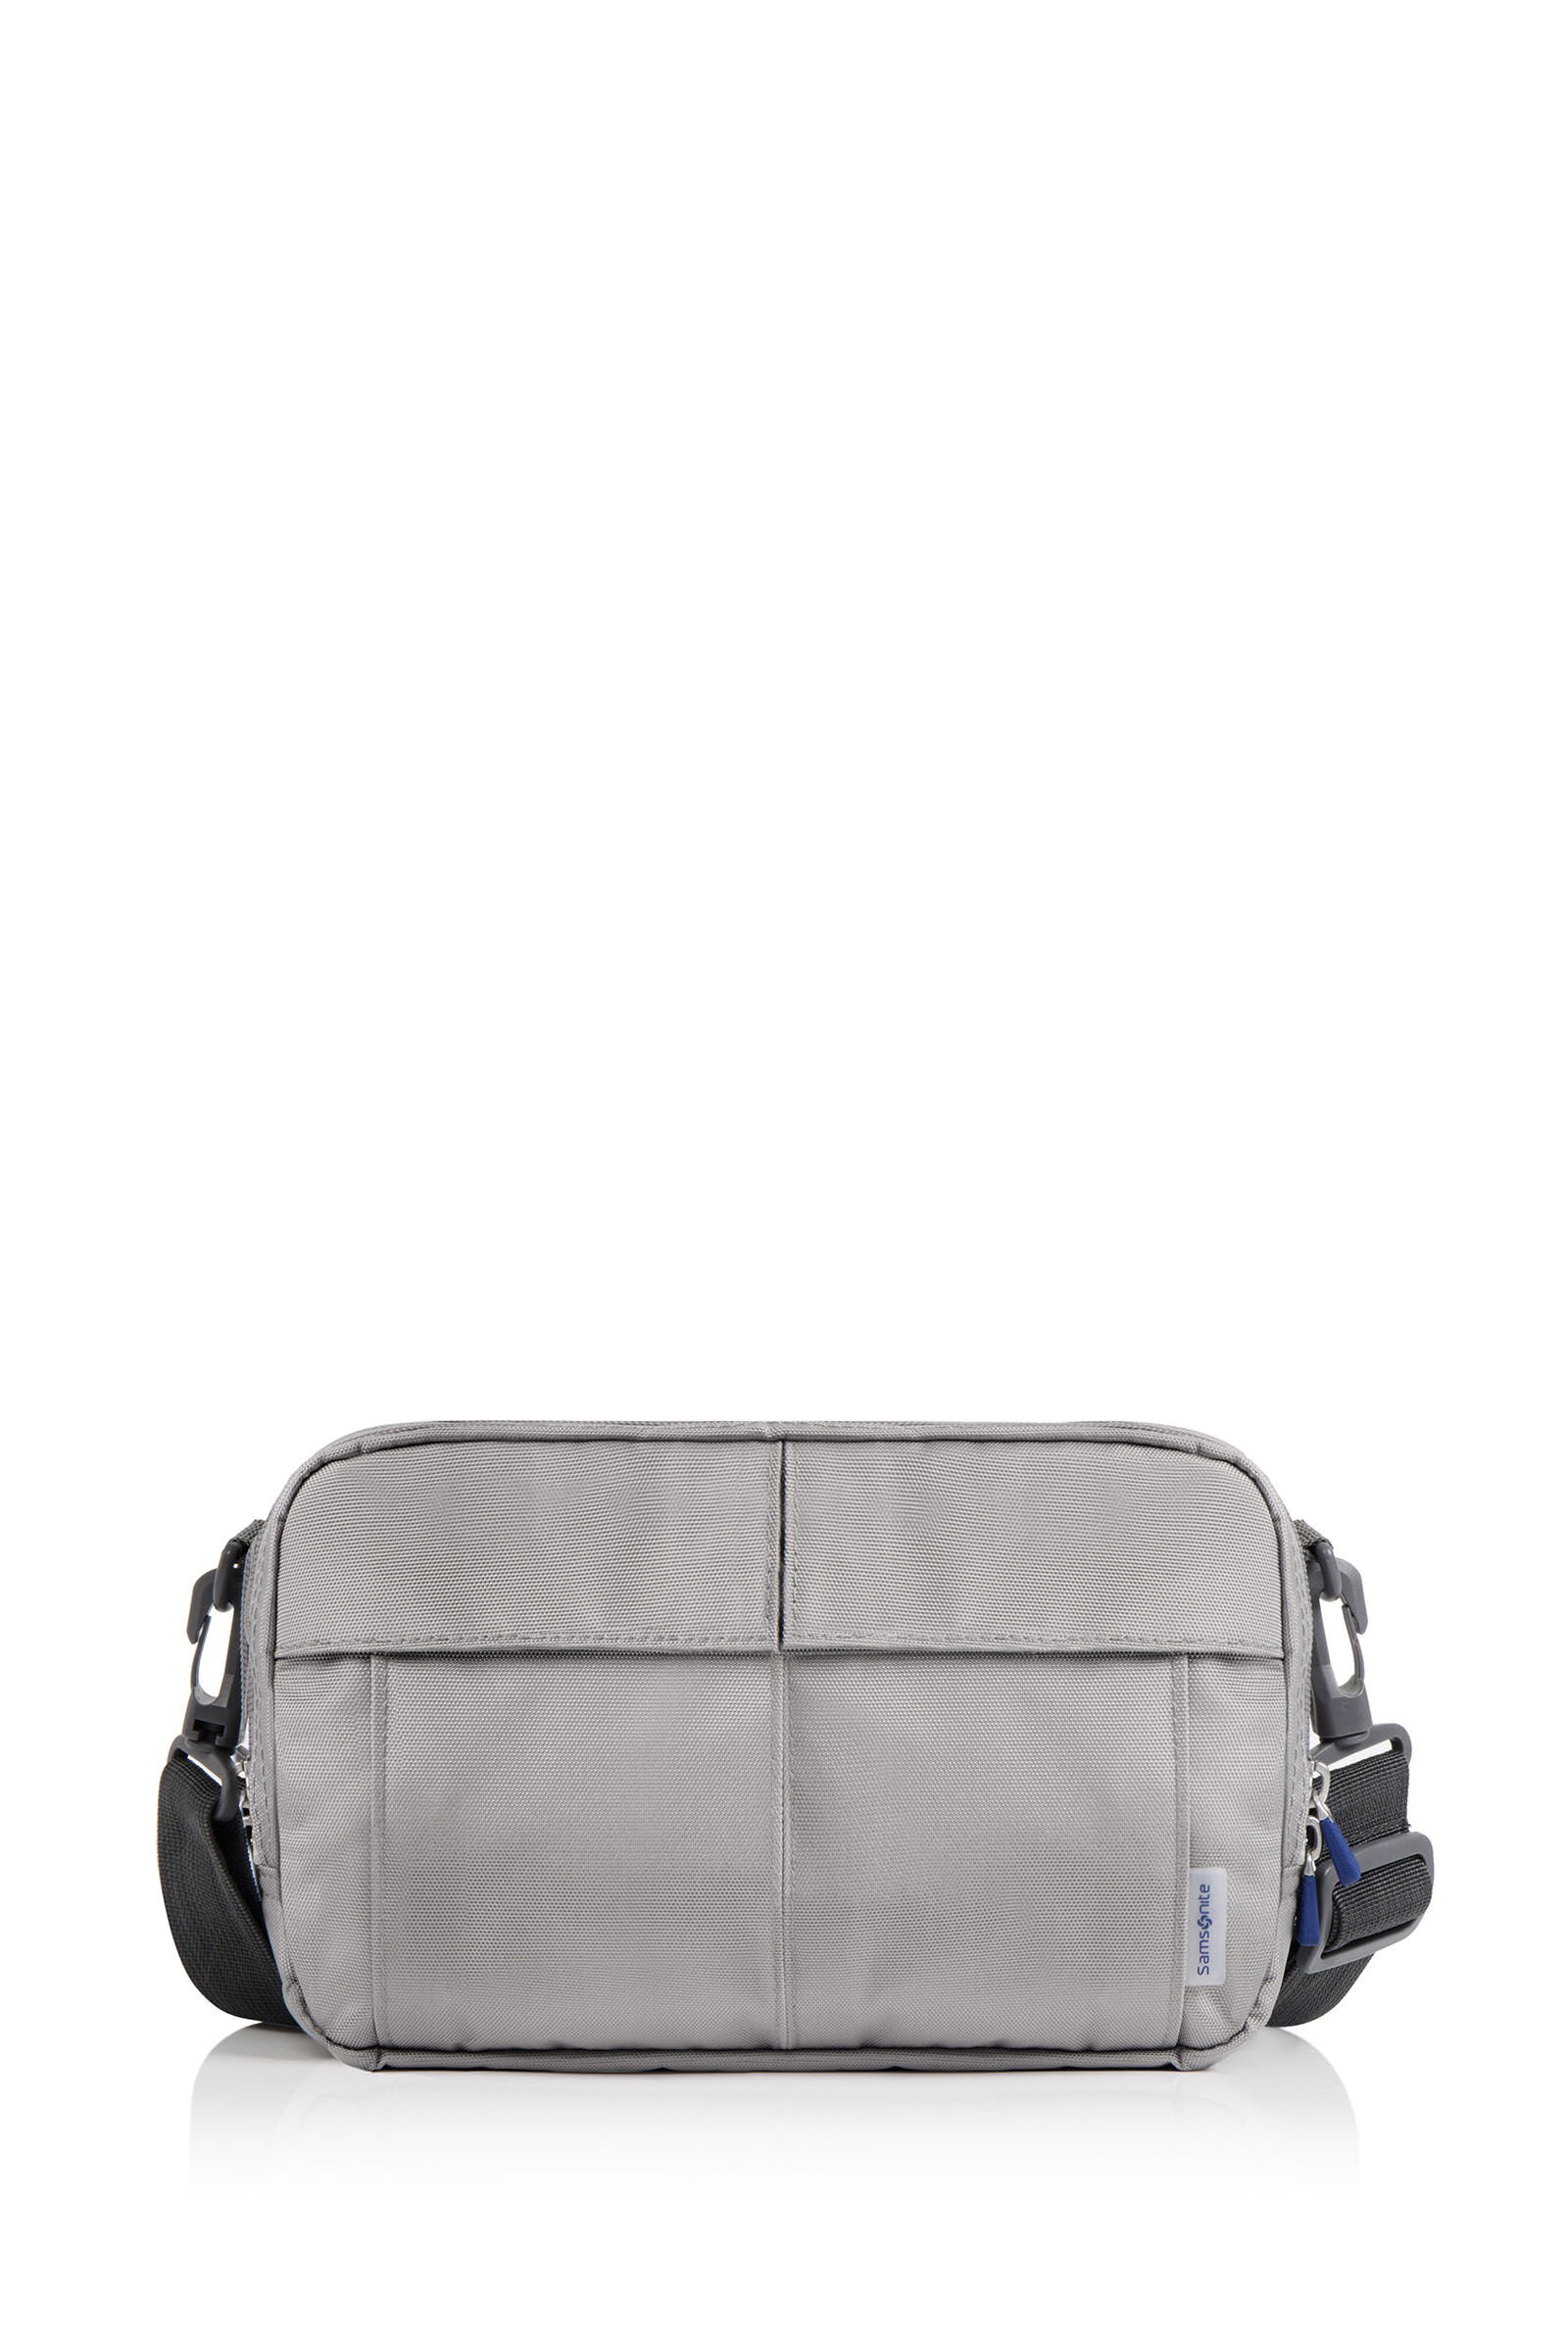 Lavie Sport Apex 21L Laptop Backpack For Men & Women Grey – Lavie World